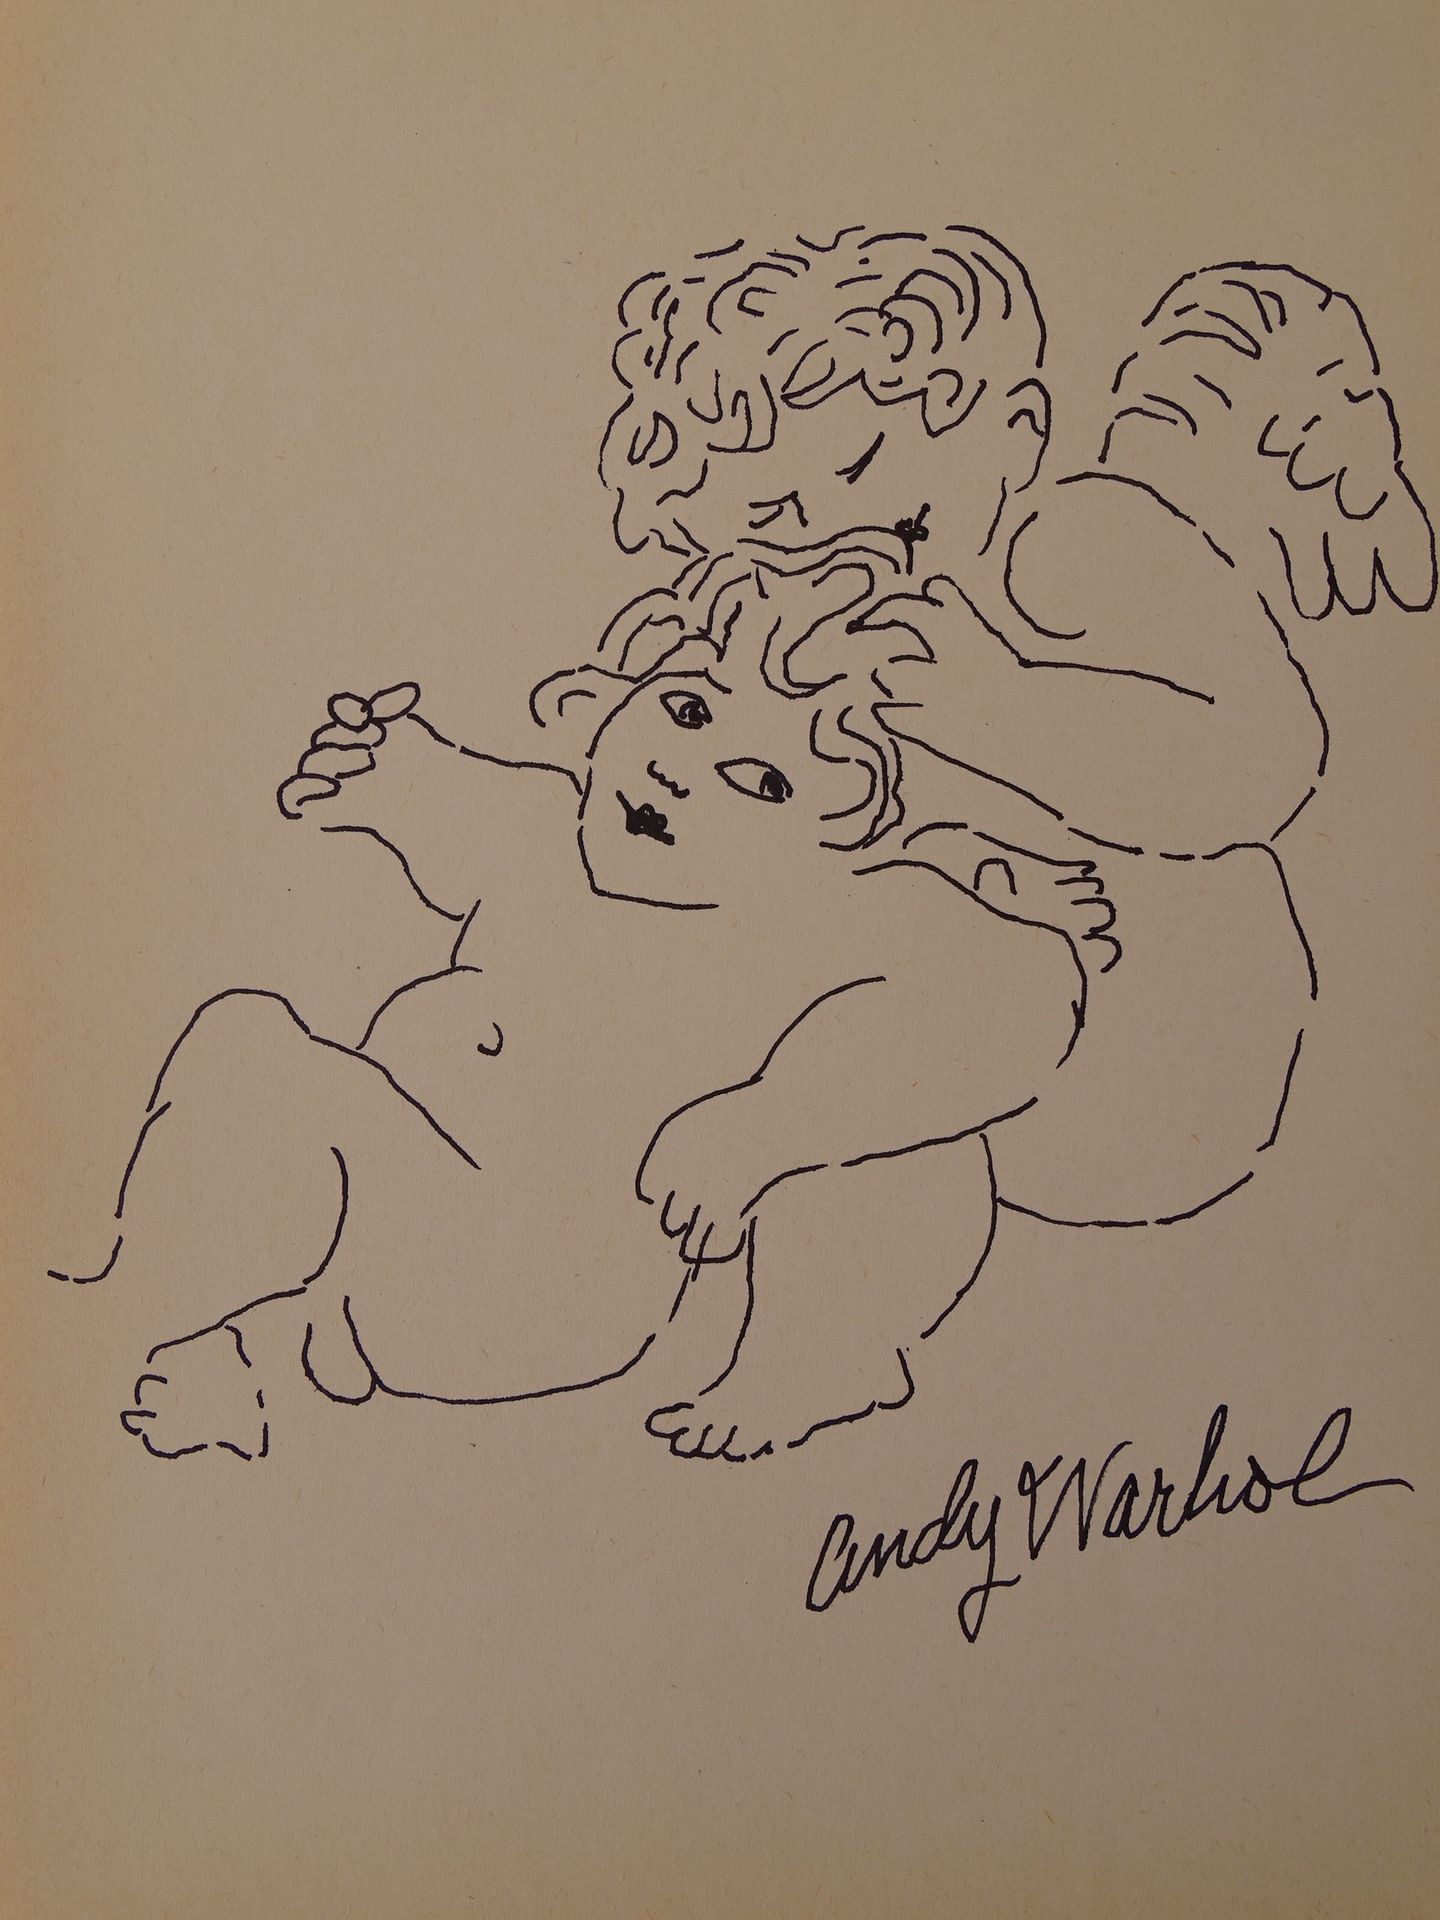 Andy Warhol 安迪-沃霍尔的作品，水墨画，23x17厘米左右，状态良好。安迪-沃霍尔，是美国视觉艺术家、电影导演和制片人，是被称为流行艺术的视觉艺术运&hellip;